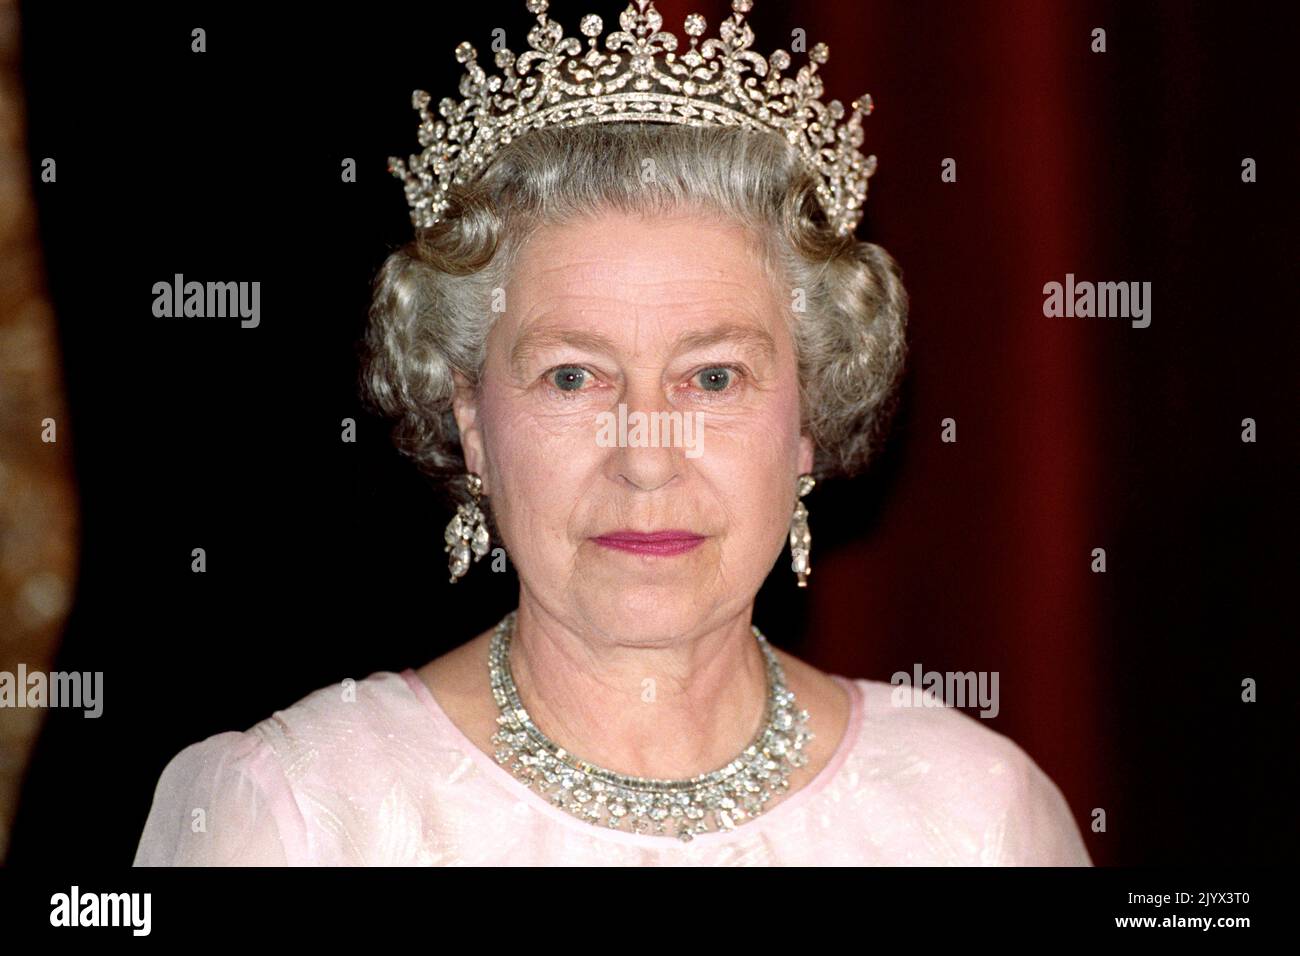 Photo du dossier datée du 04/05/93 de la reine Elizabeth II lors d'un banquet d'État au Parlement de Budapest lors de sa visite d'État en Hongrie. La Reine est décédée pacifiquement à Balmoral cet après-midi, a annoncé Buckingham Palace. Date de publication : jeudi 8 septembre 2022. Banque D'Images